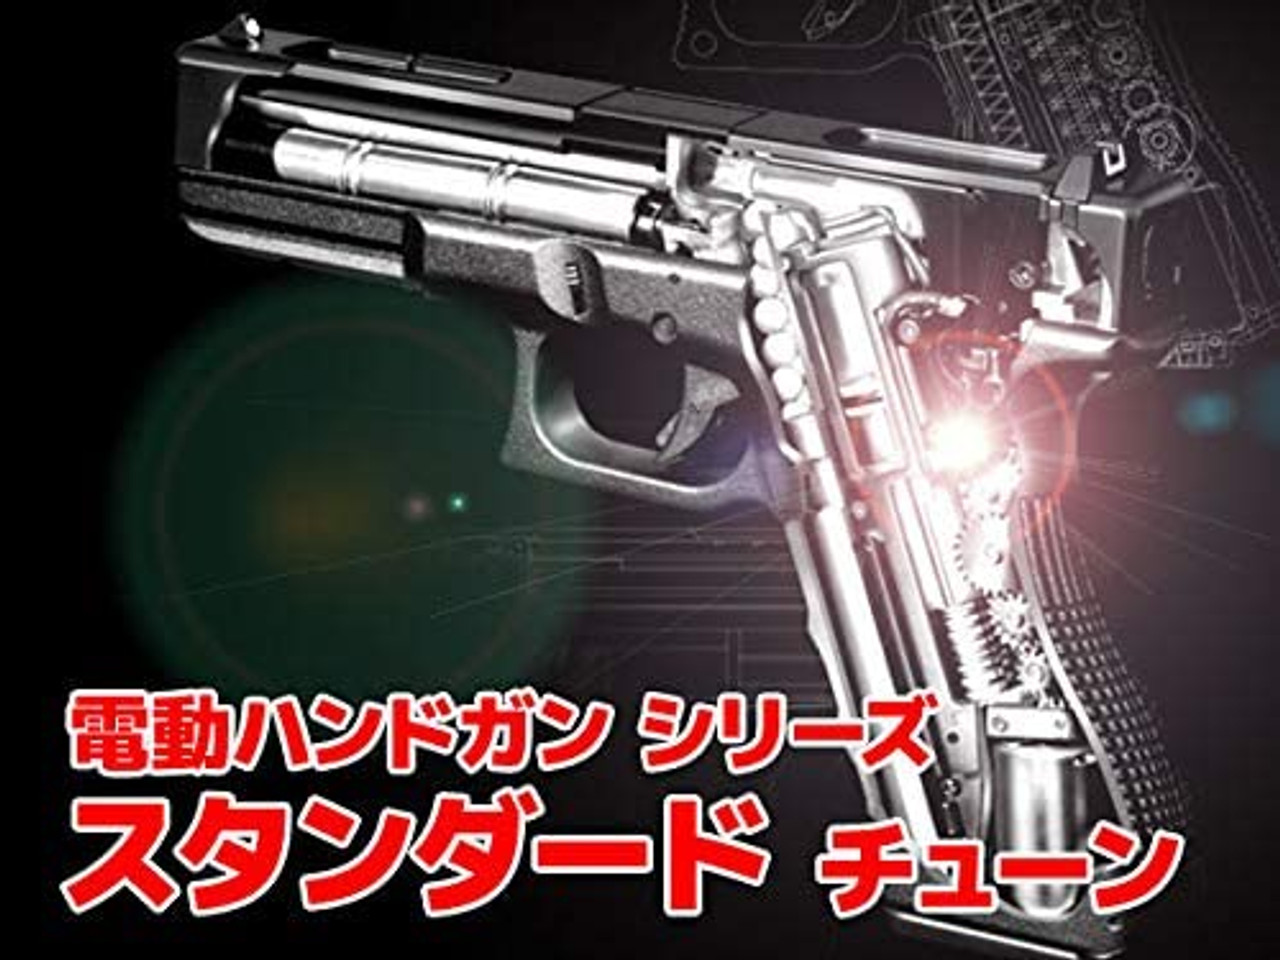 Tokyo Marui Hi-CAPA E electric Airsoft handgun (custom built-in) 